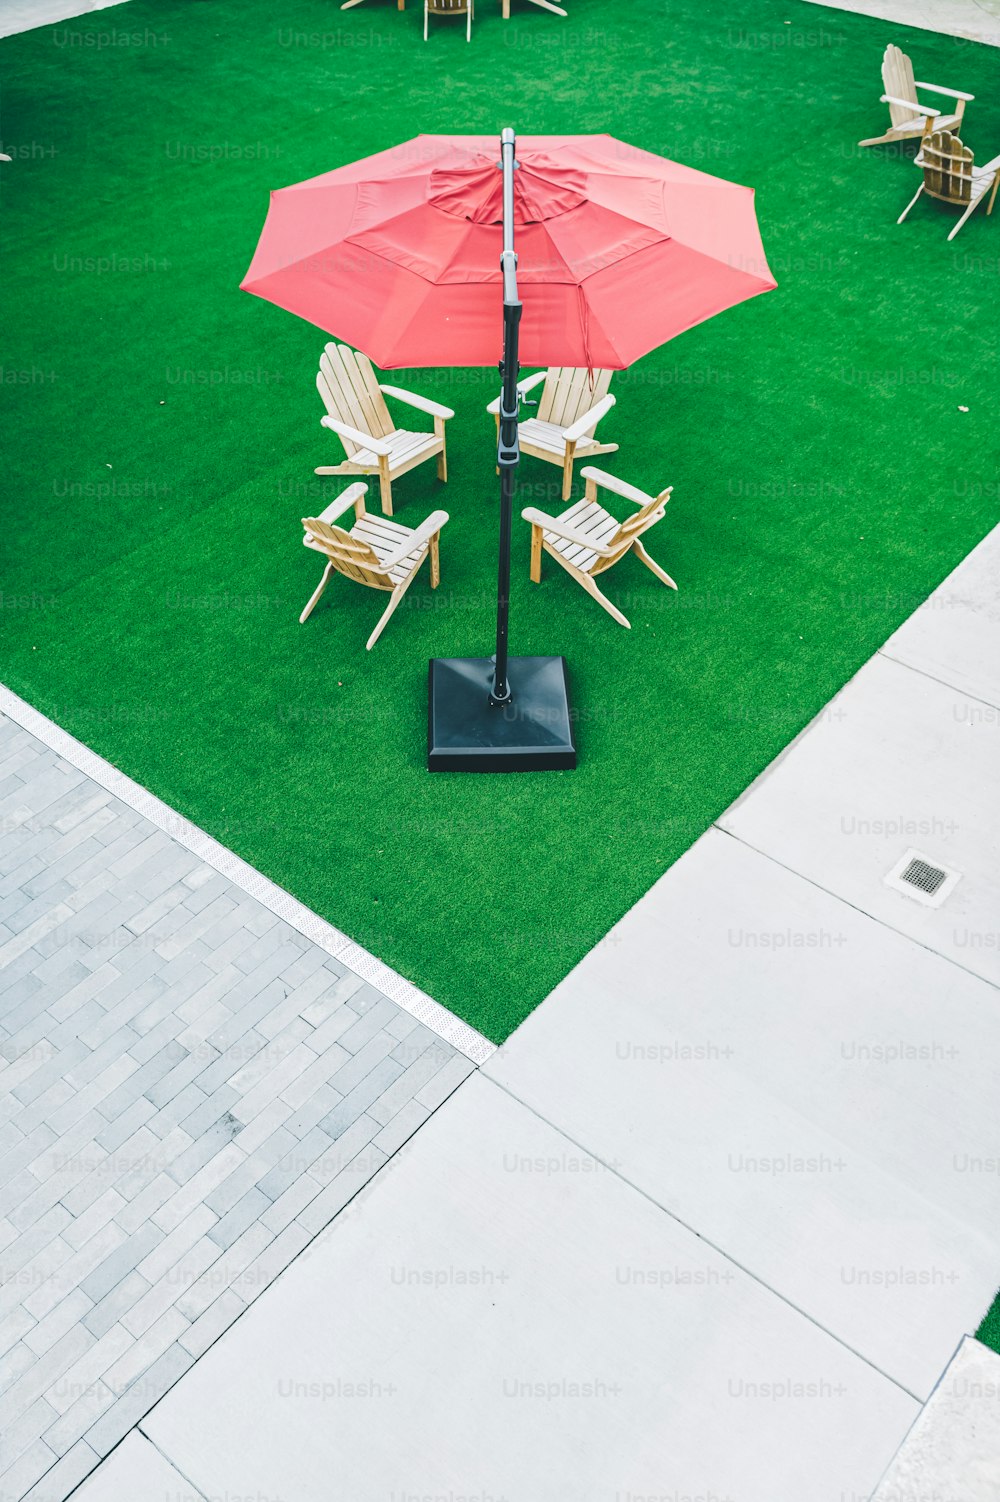 芝生の椅子と傘のある芝生